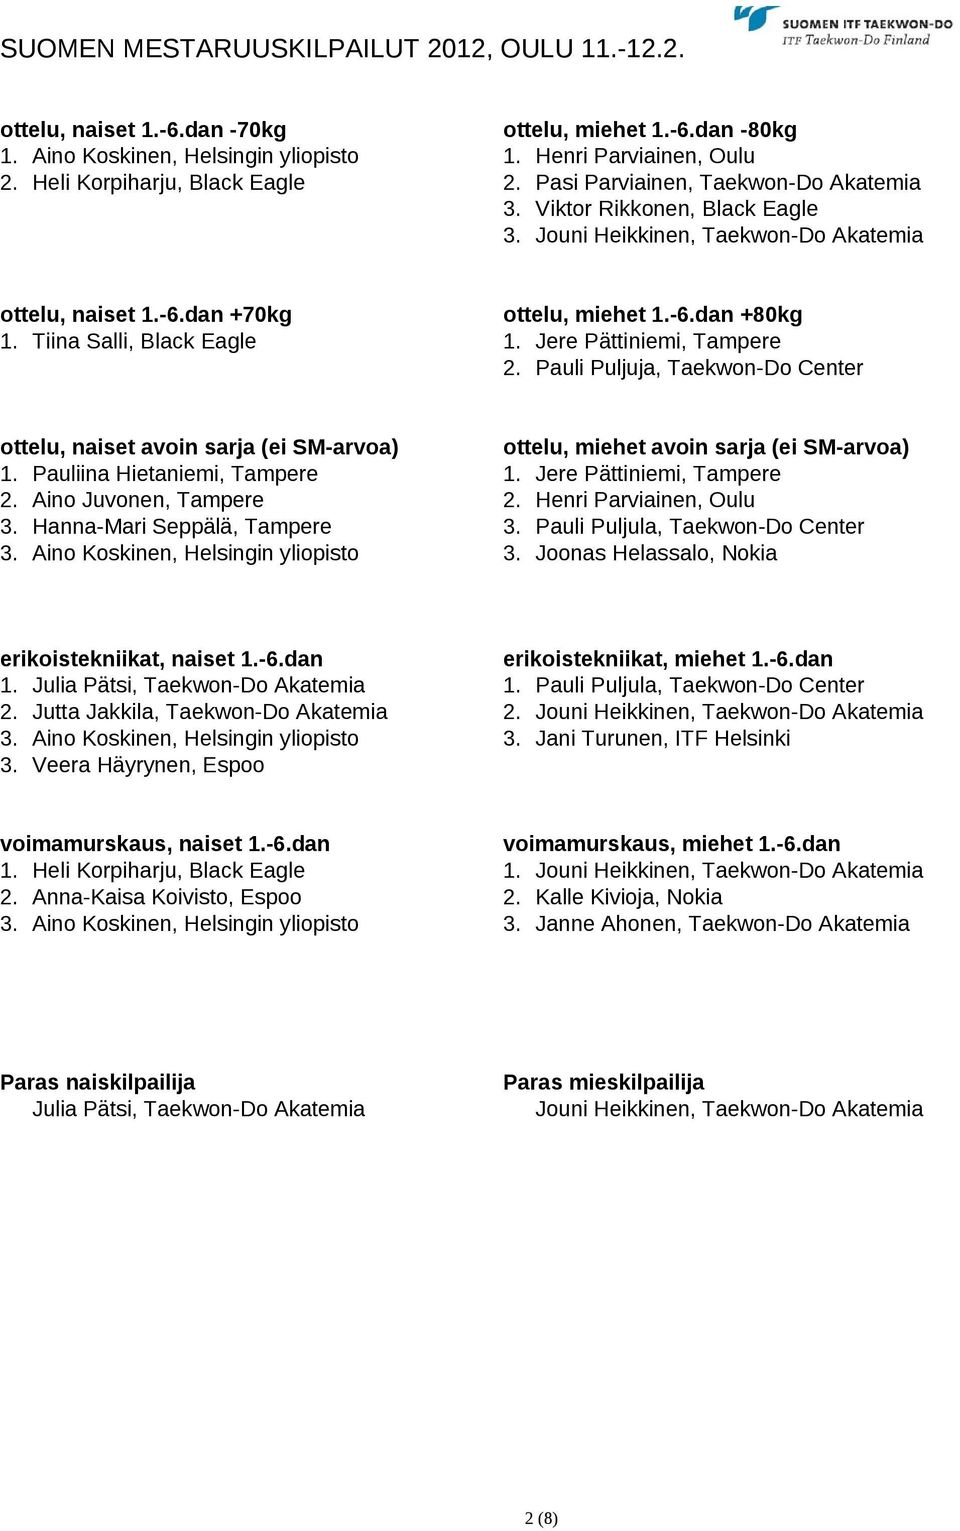 Tiina Salli, Black Eagle 1. Jere Pättiniemi, Tampere 2. Pauli Puljuja, Taekwon-Do Center ottelu, naiset avoin sarja (ei SM-arvoa) ottelu, miehet avoin sarja (ei SM-arvoa) 1.